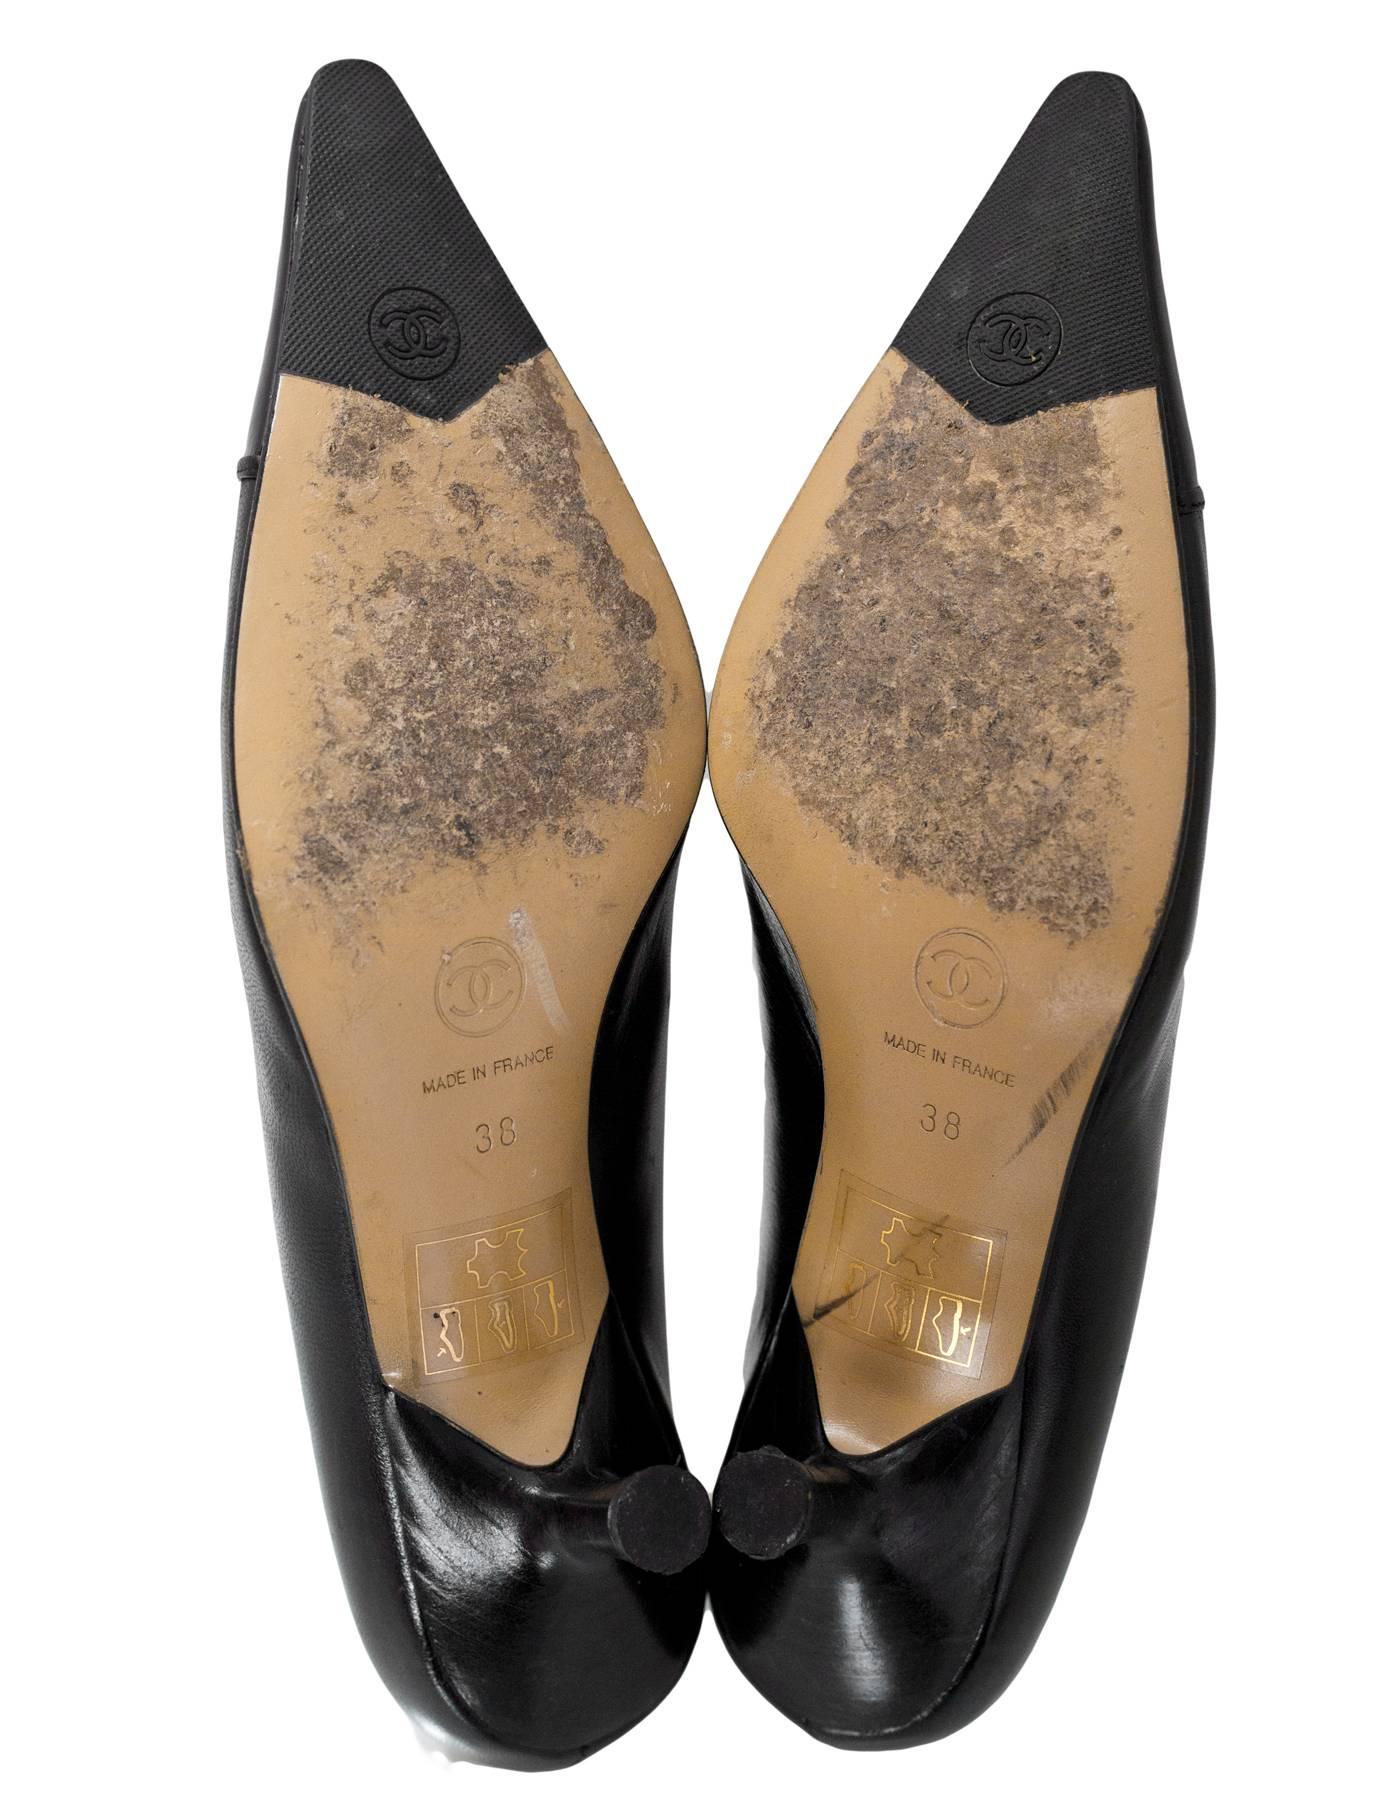 Women's Chanel Black Leather Pointed Toe Kitten Heels sz 38